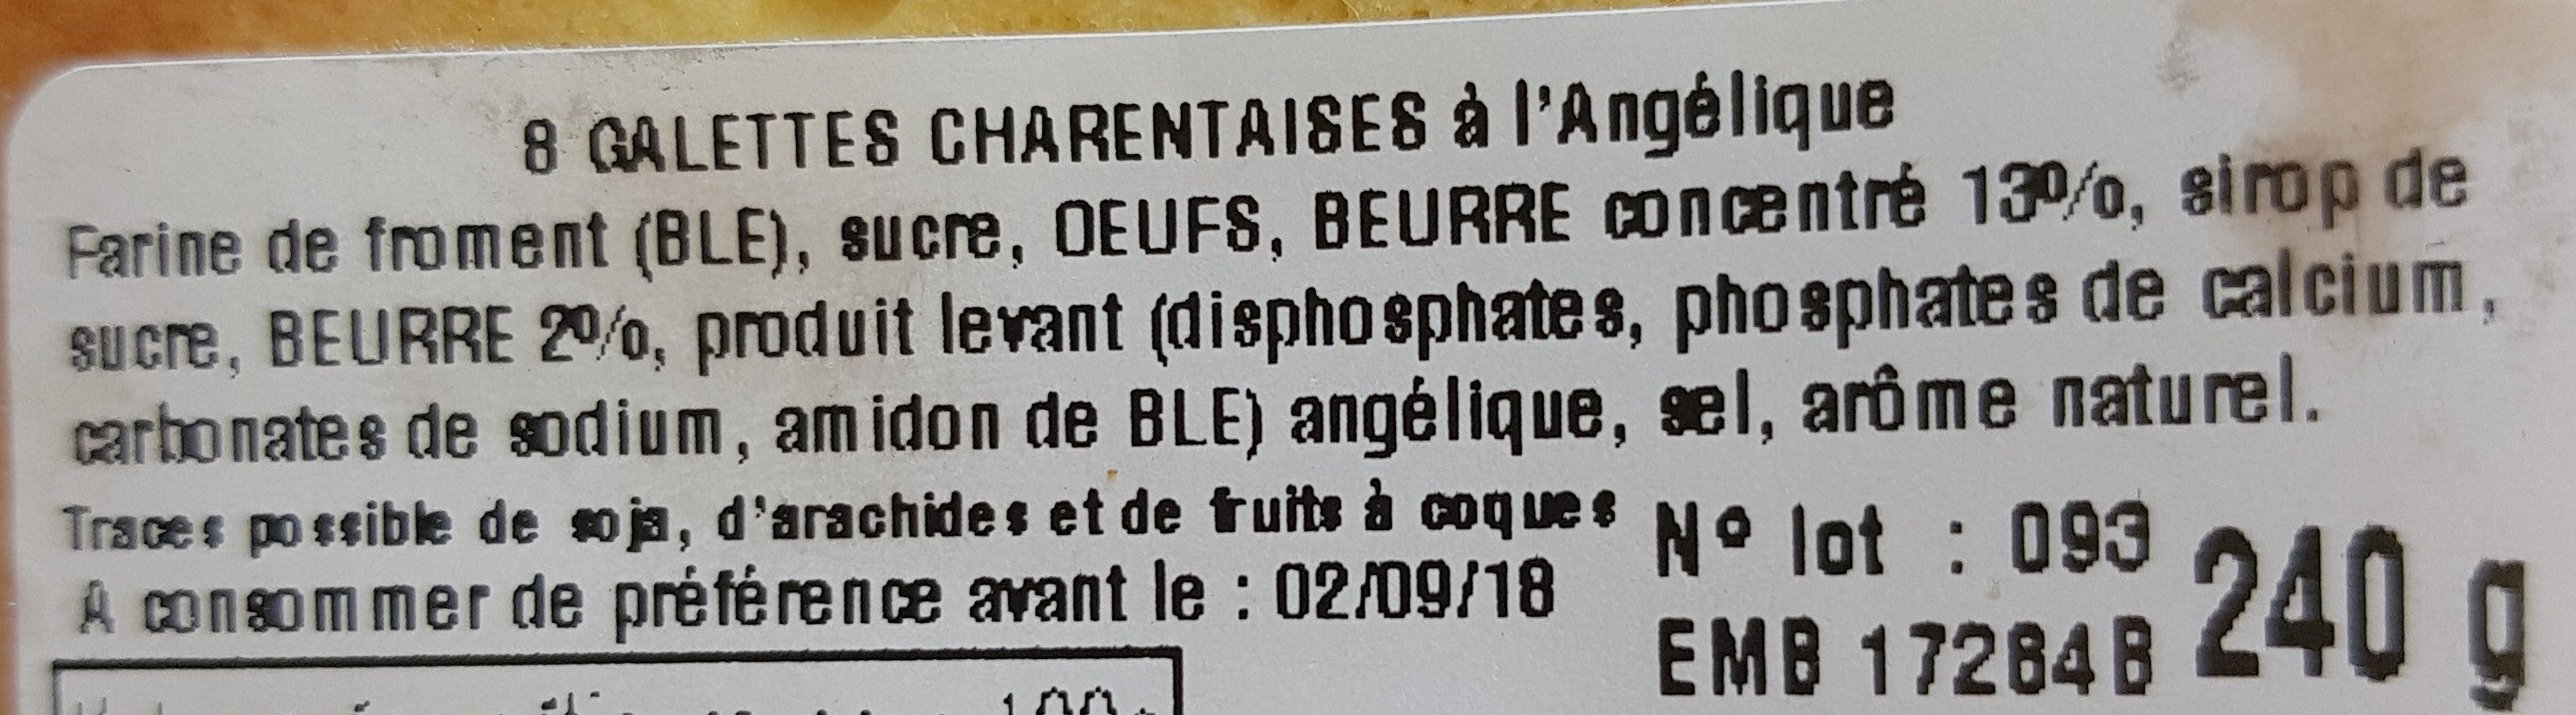 La galette Charentaise l'originale - Ingredients - fr